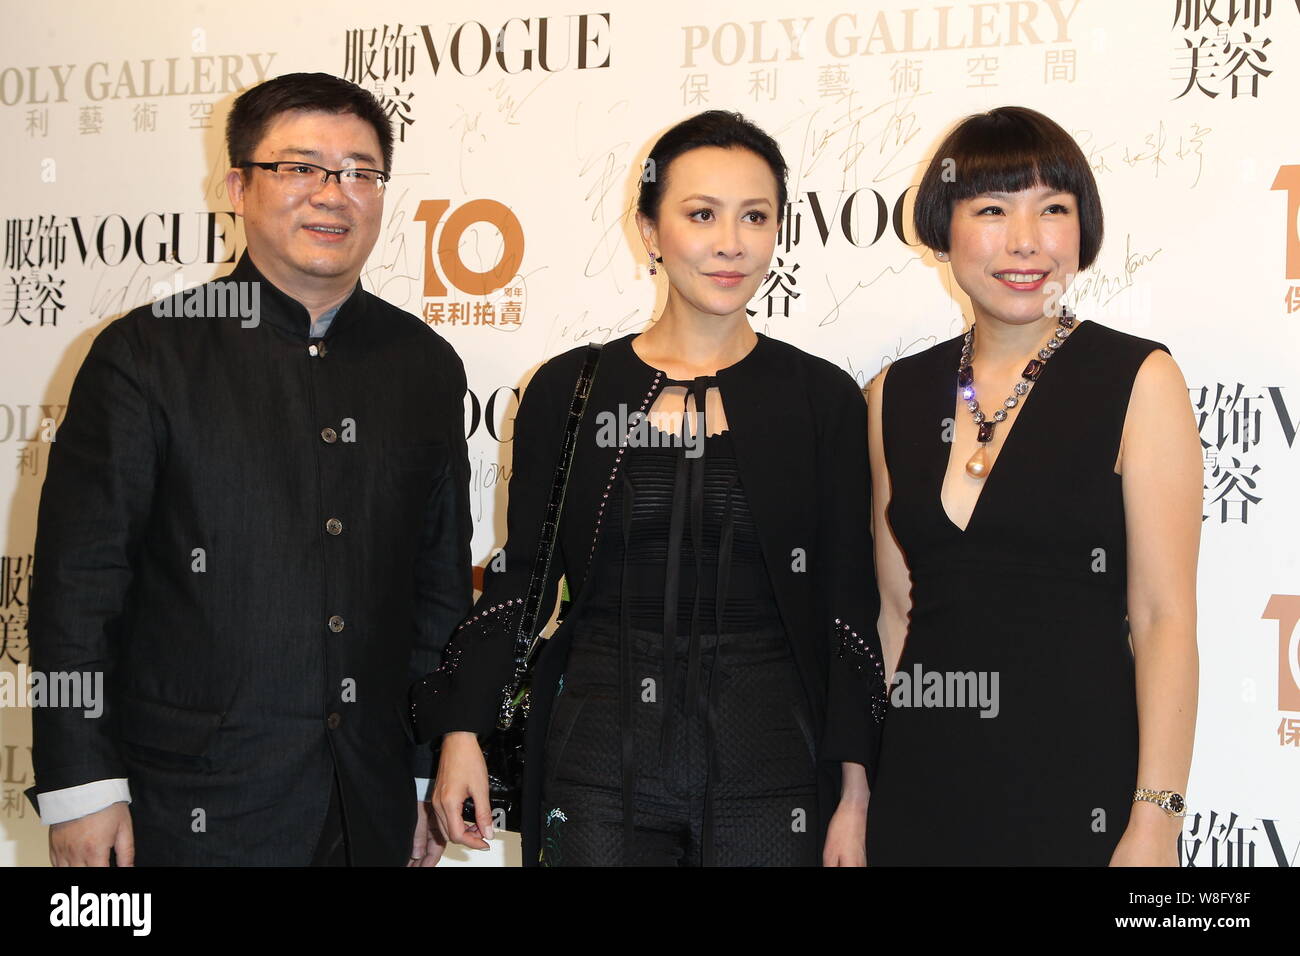 Hong Kong L'actrice Carina Lau, centre, pose avec les clients au cours de l'ouverture de la partie 'inspiré par la mode' exhibition par Vogue et Poly Galerie dans Banque D'Images